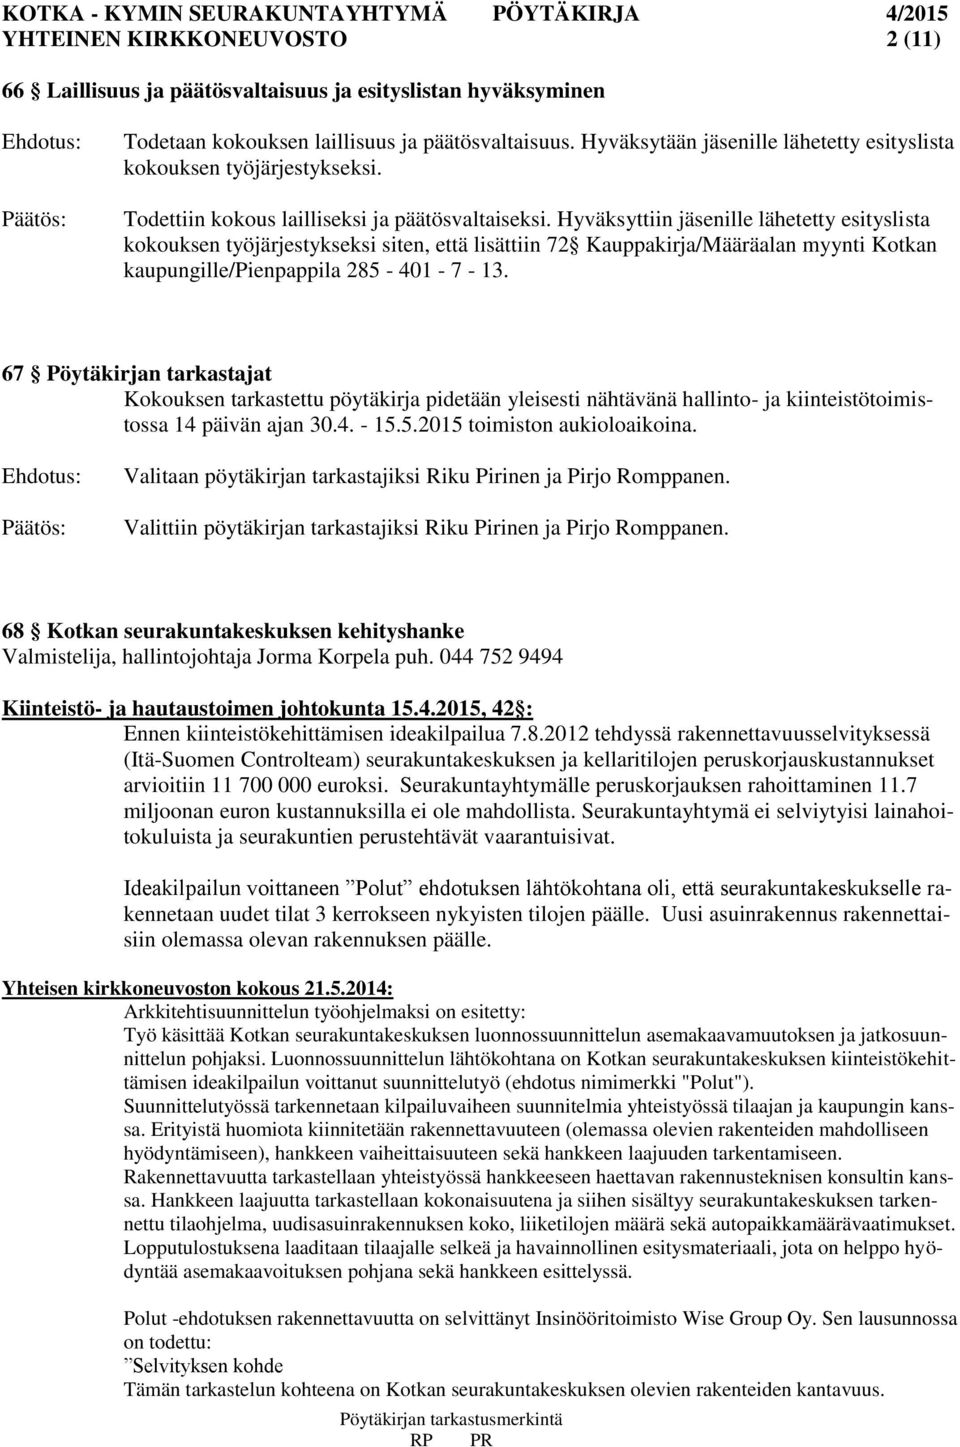 Hyväksyttiin jäsenille lähetetty esityslista kokouksen työjärjestykseksi siten, että lisättiin 72 Kauppakirja/Määräalan myynti Kotkan kaupungille/pienpappila 285-401 - 7-13.